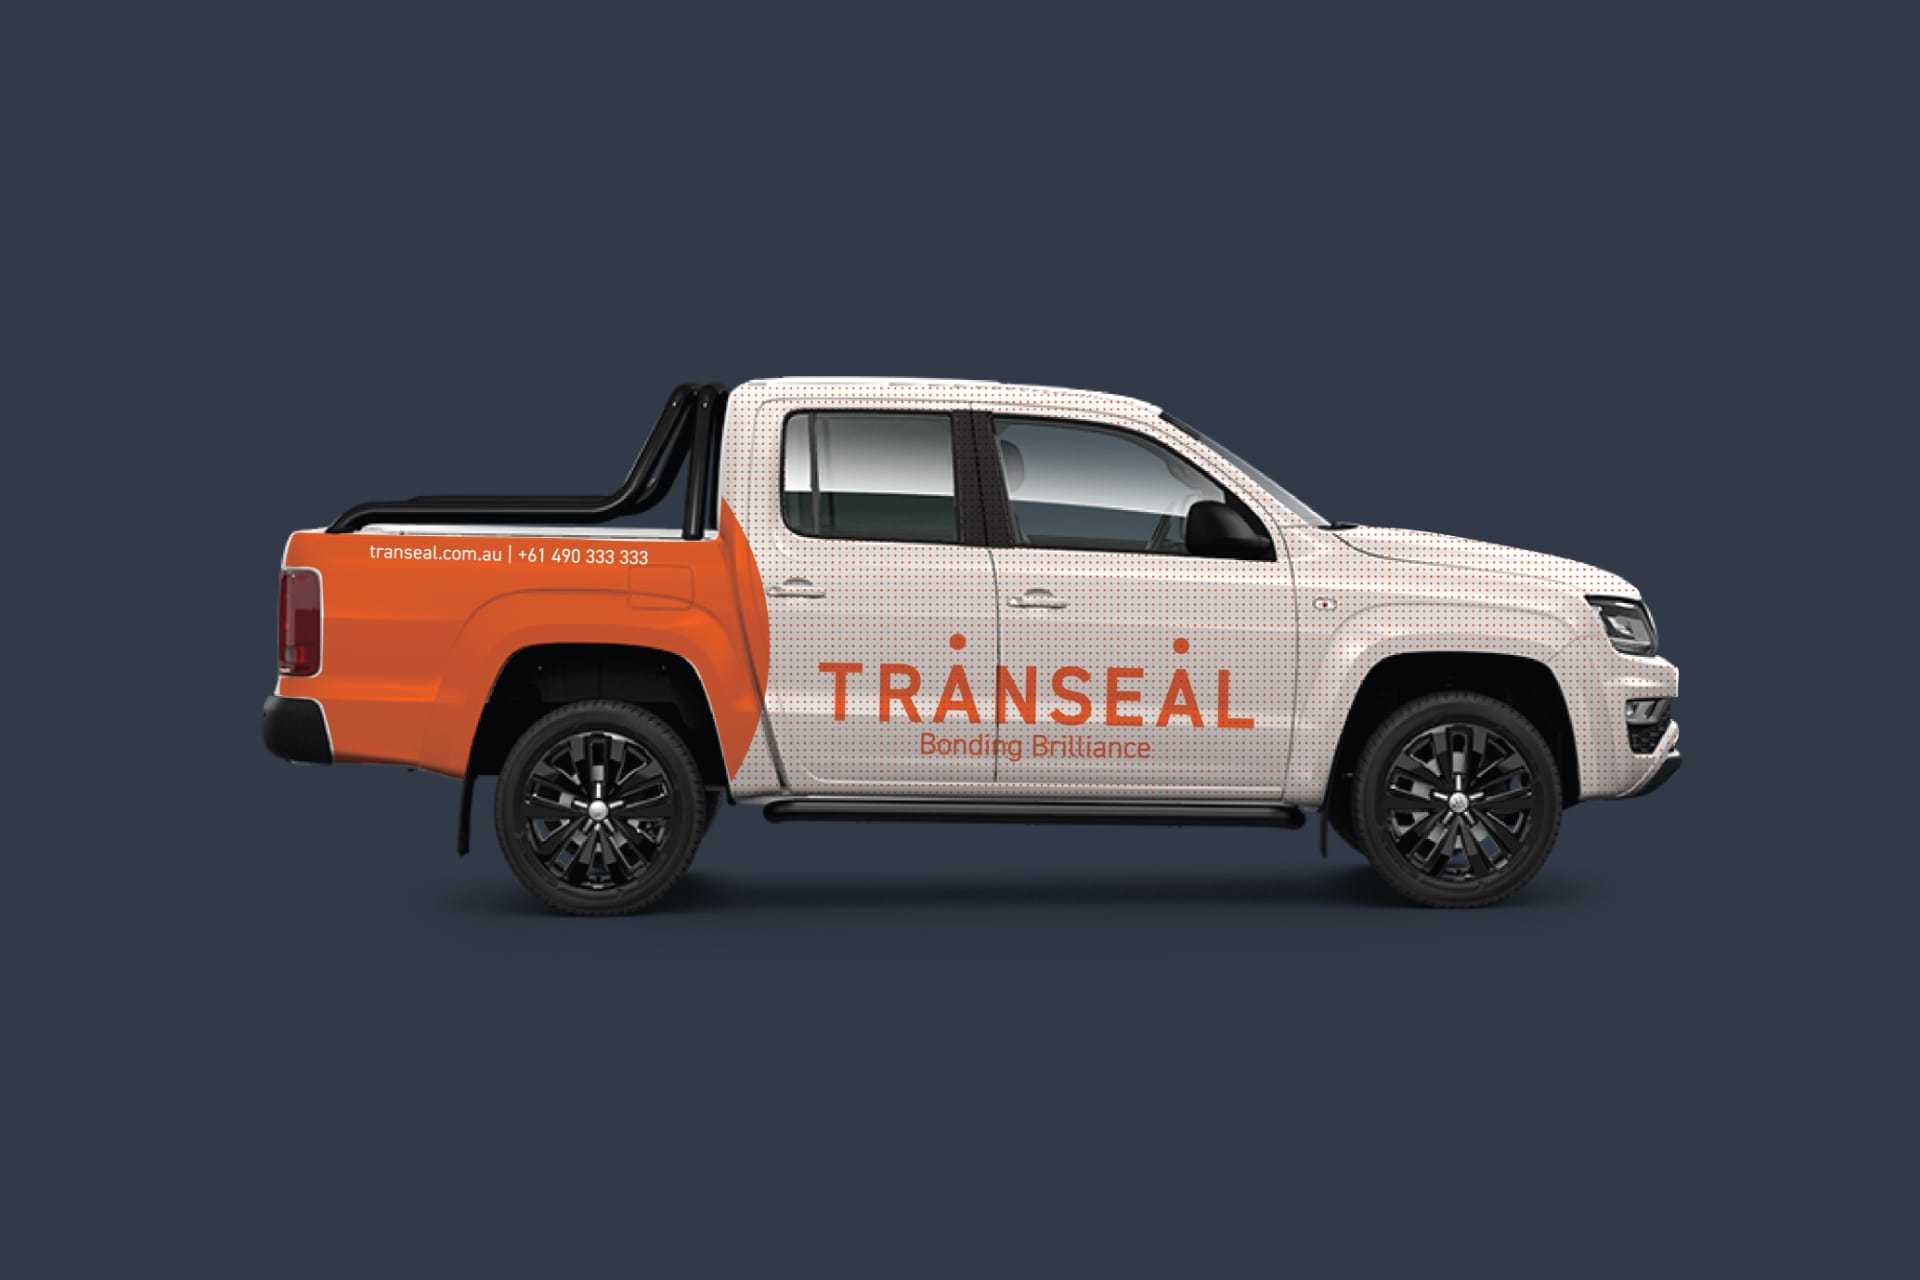 Transeal Truck